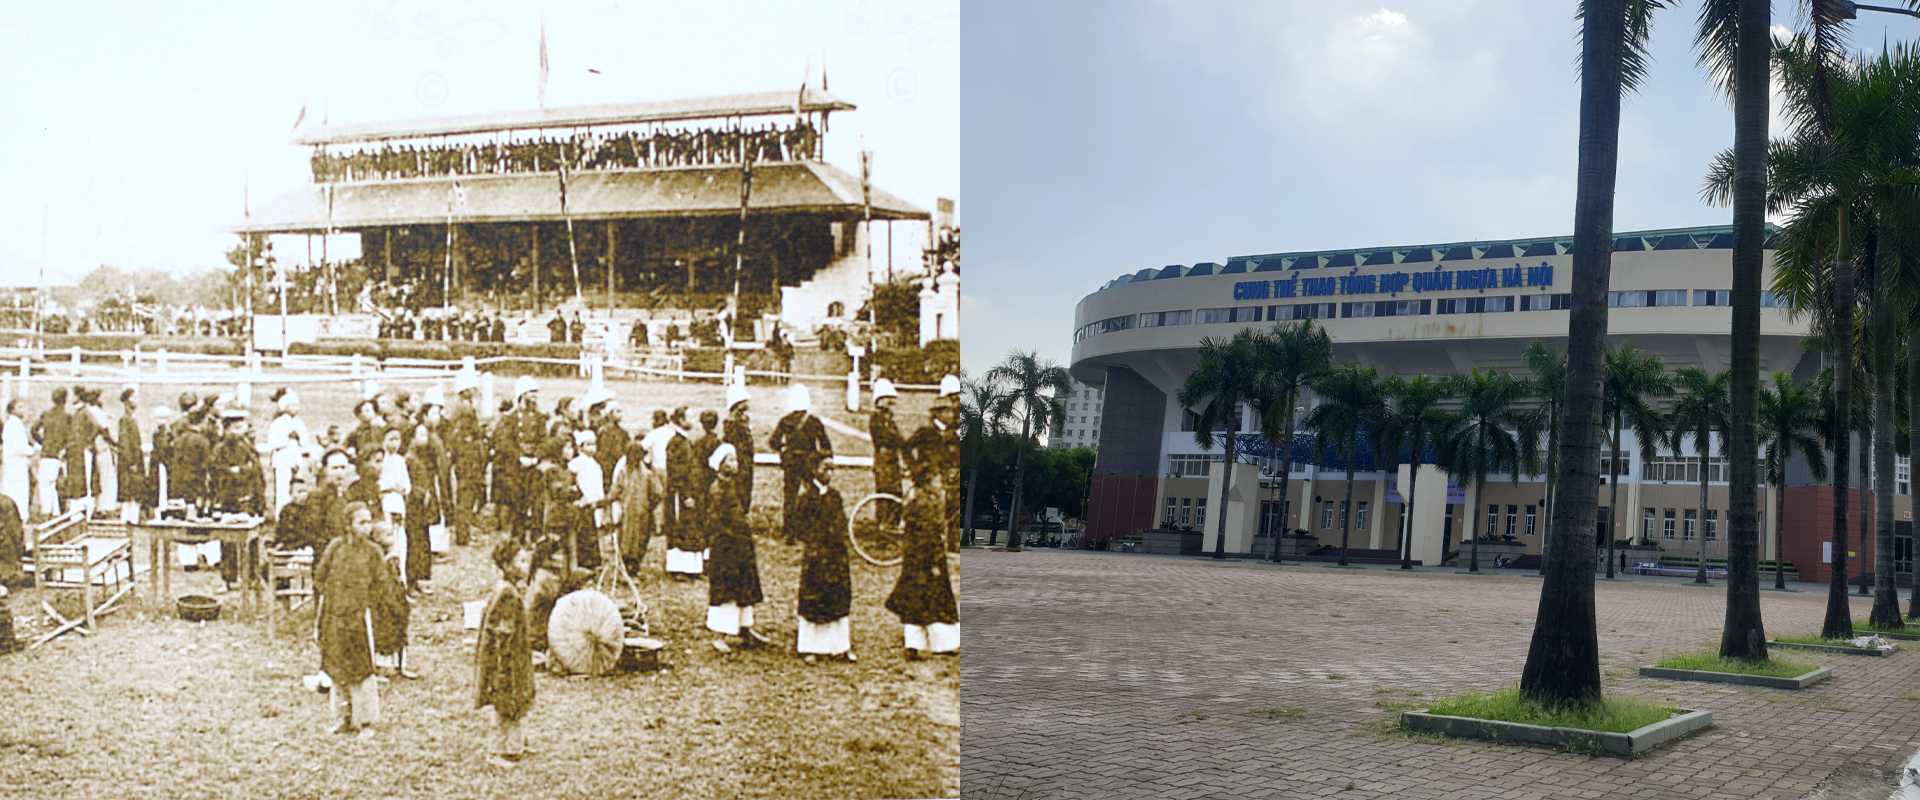 Những hình ảnh thú vị về sự đổi thay của Hà Nội sau 100 năm - Ảnh 9.